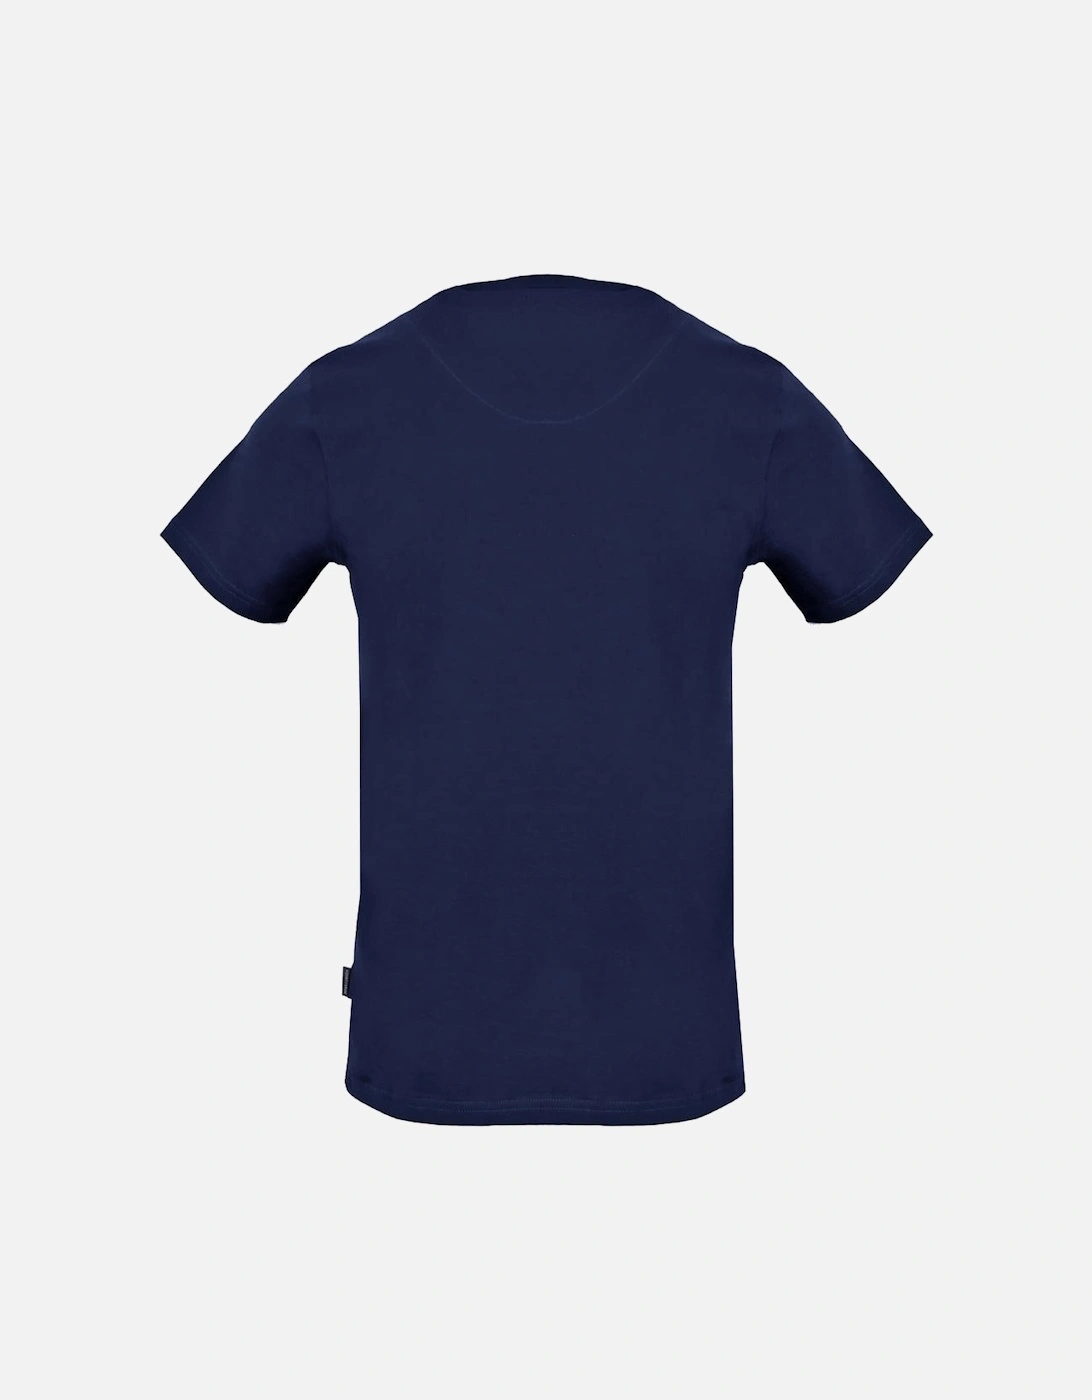 Classic Check Logo Navy Blue T-Shirt